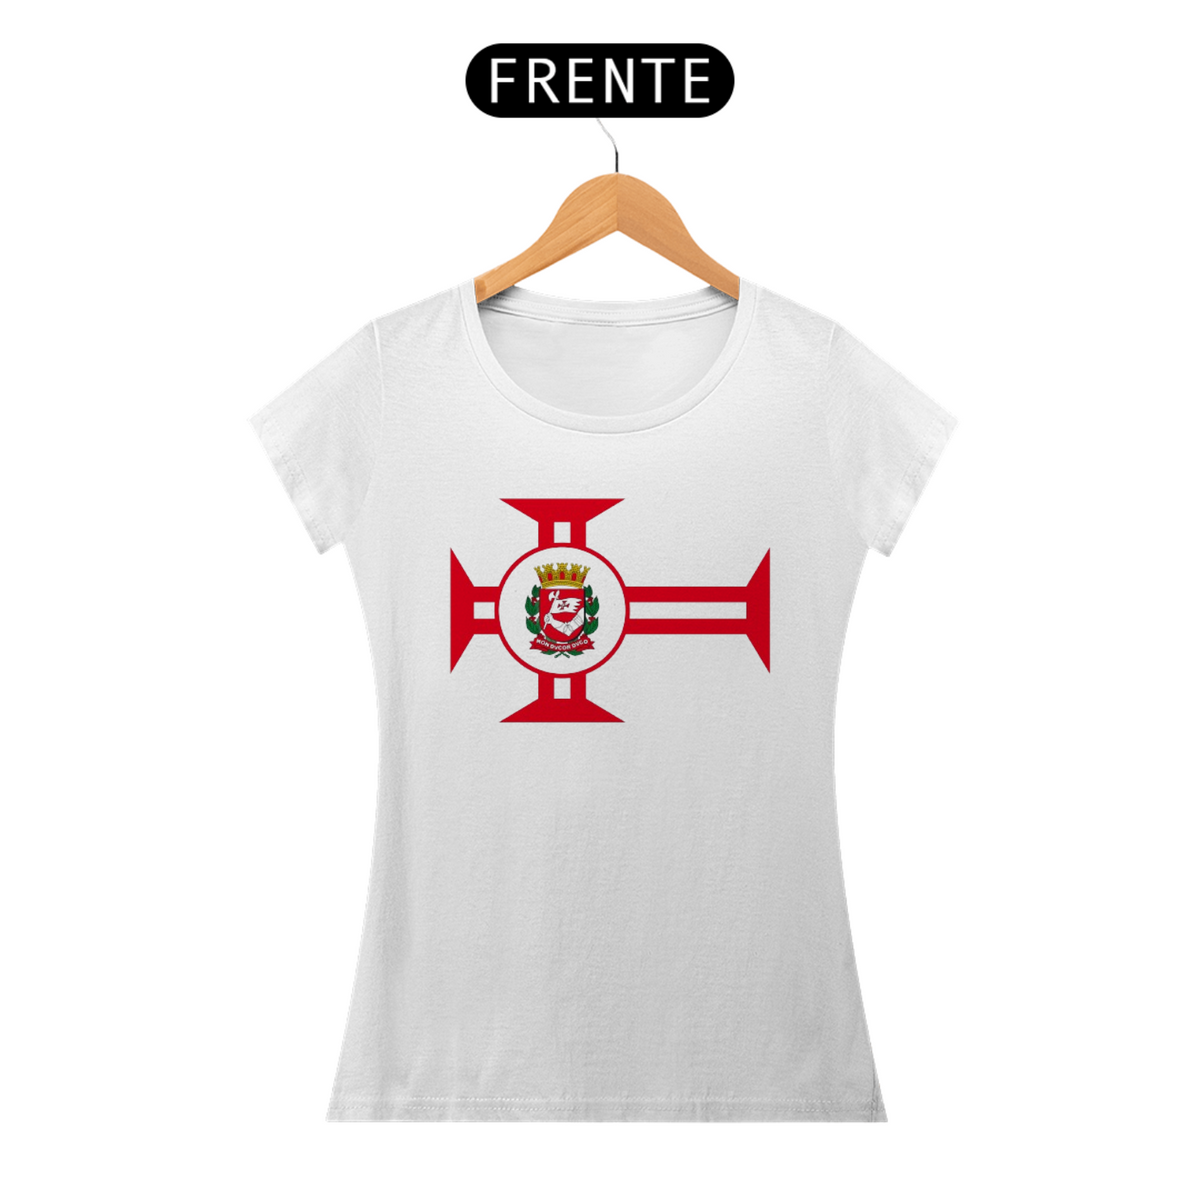 Nome do produto: Camiseta Bandeira Cidade de São Paulo Feminina